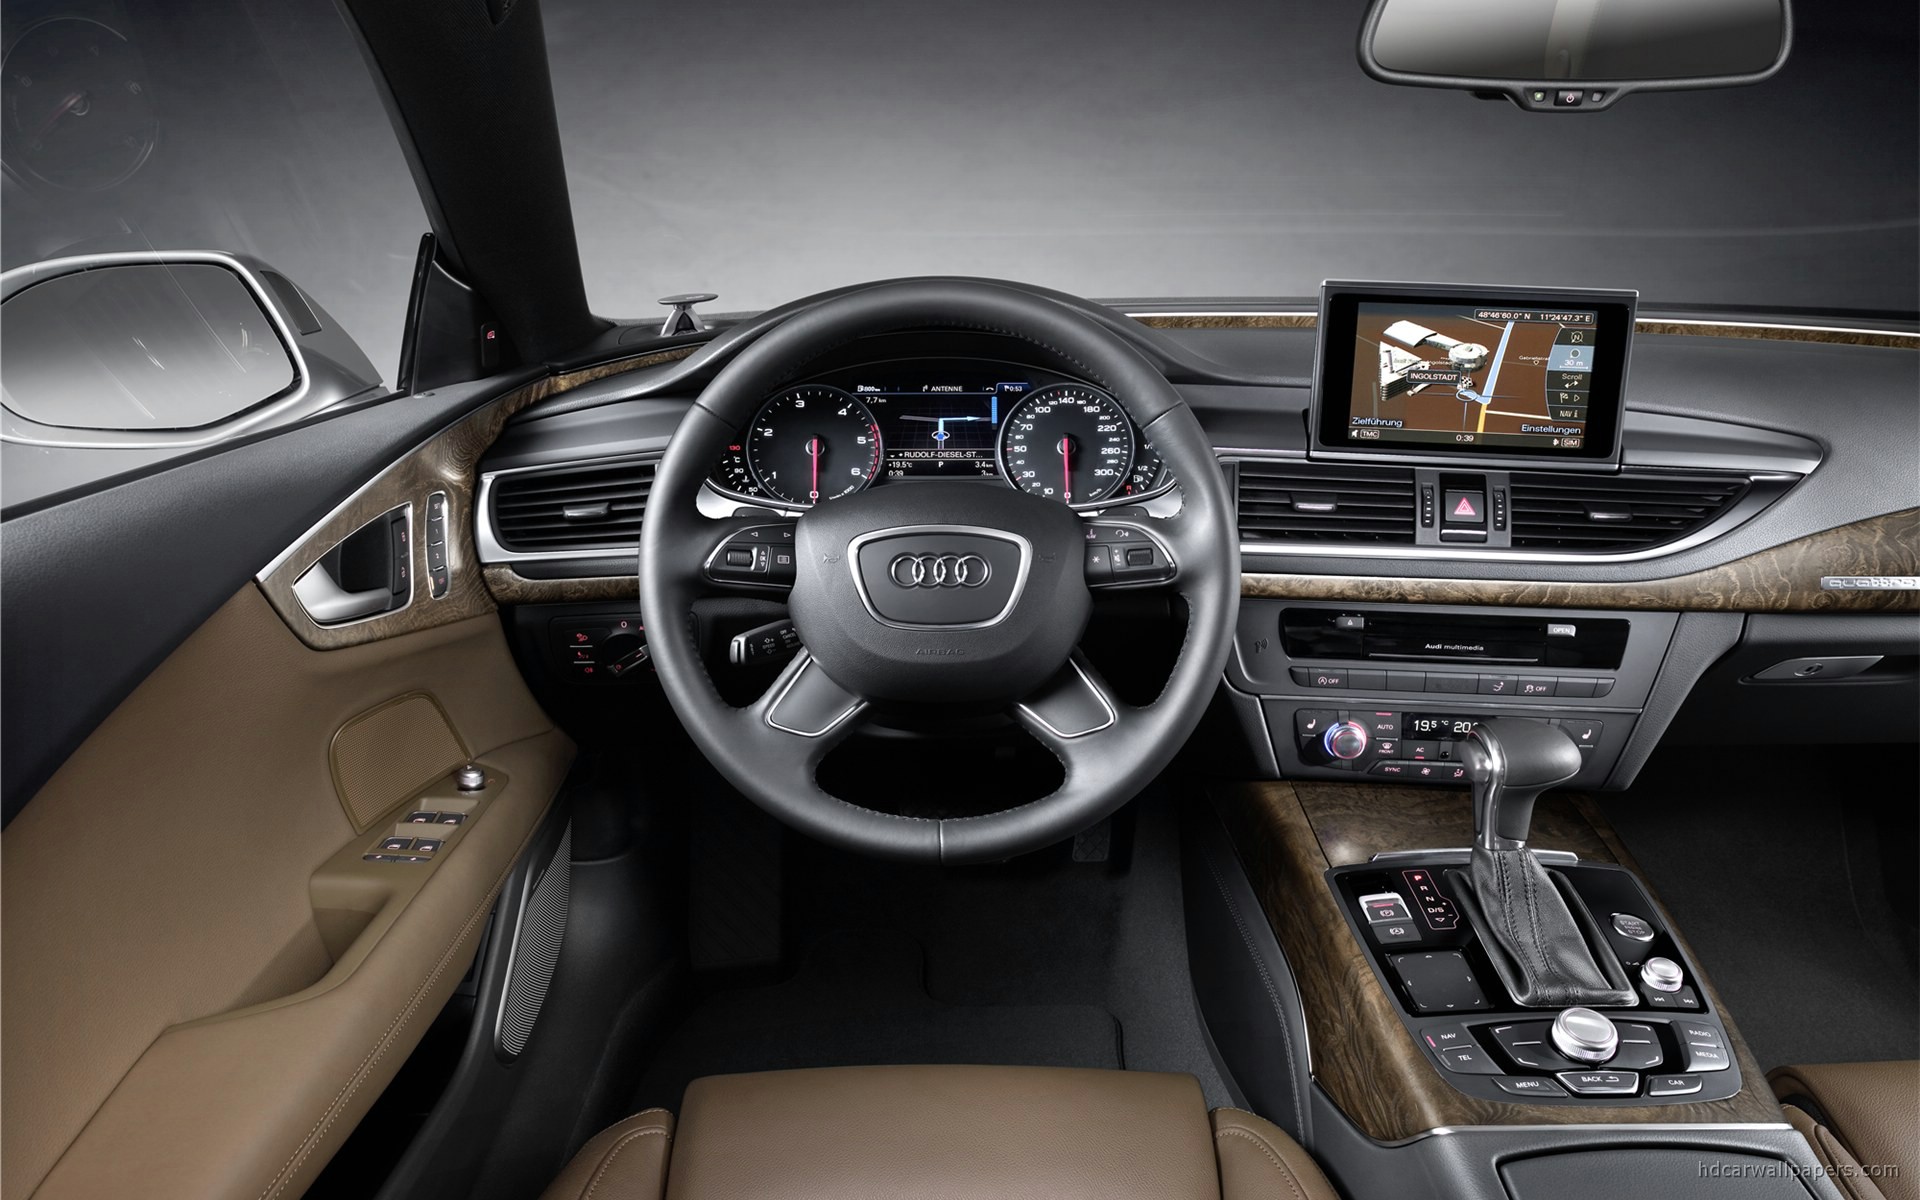 2011 Audi A7 Interior Wallpaper Hd Car Wallpapers Id 1840